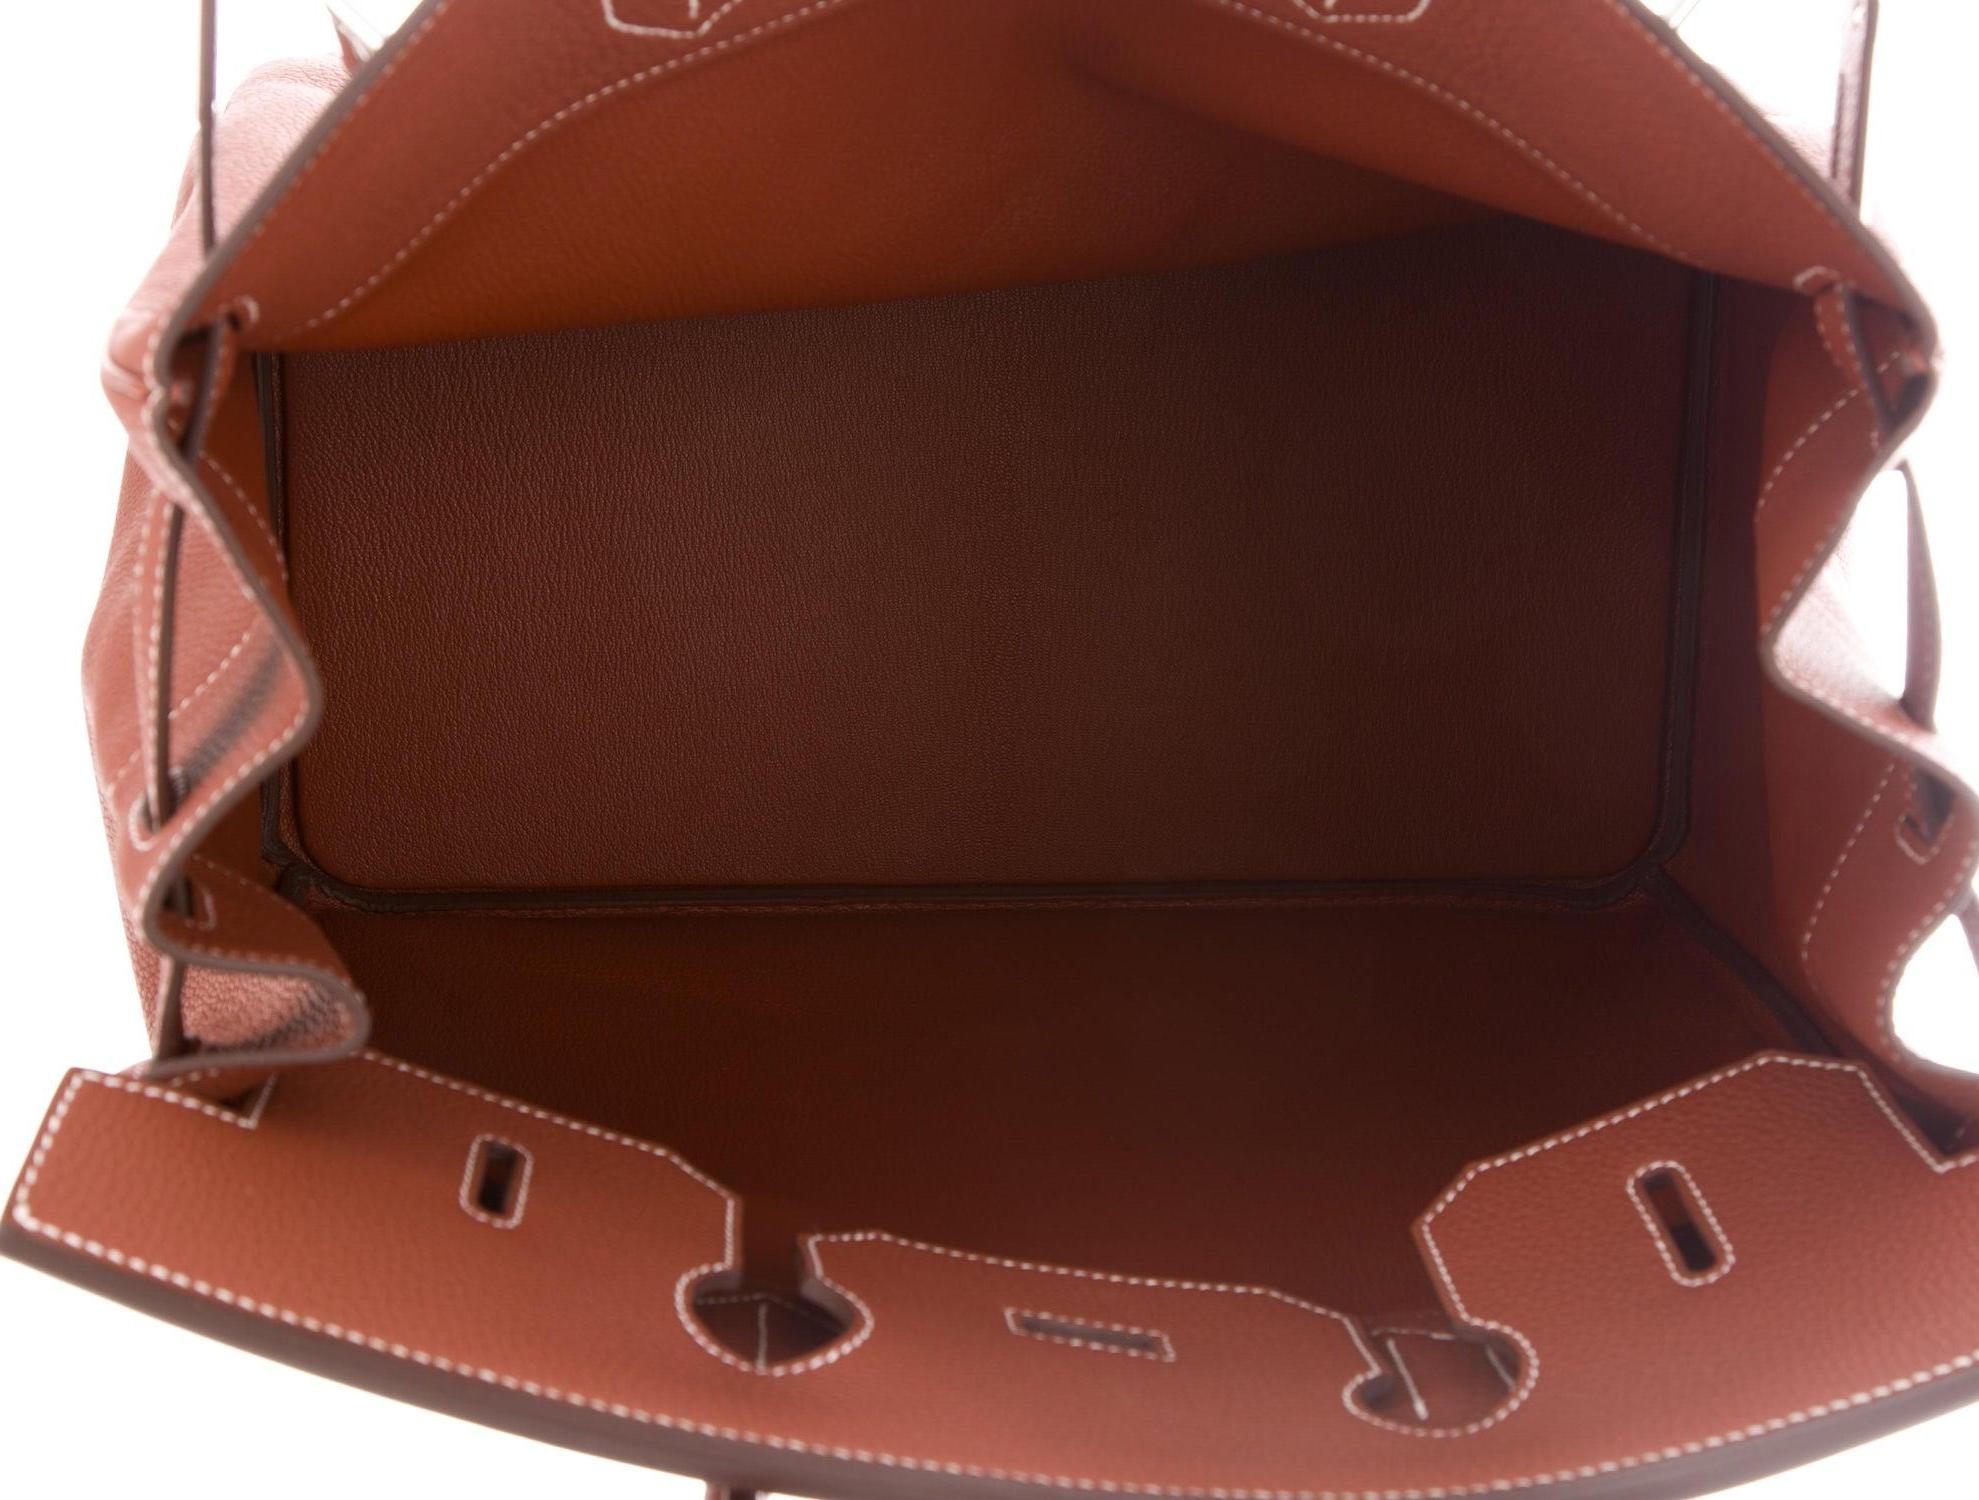 Women's Hermes NEW Birkin HAC 40 Cognac Leather  Men's Travel Top Handle Tote Bag